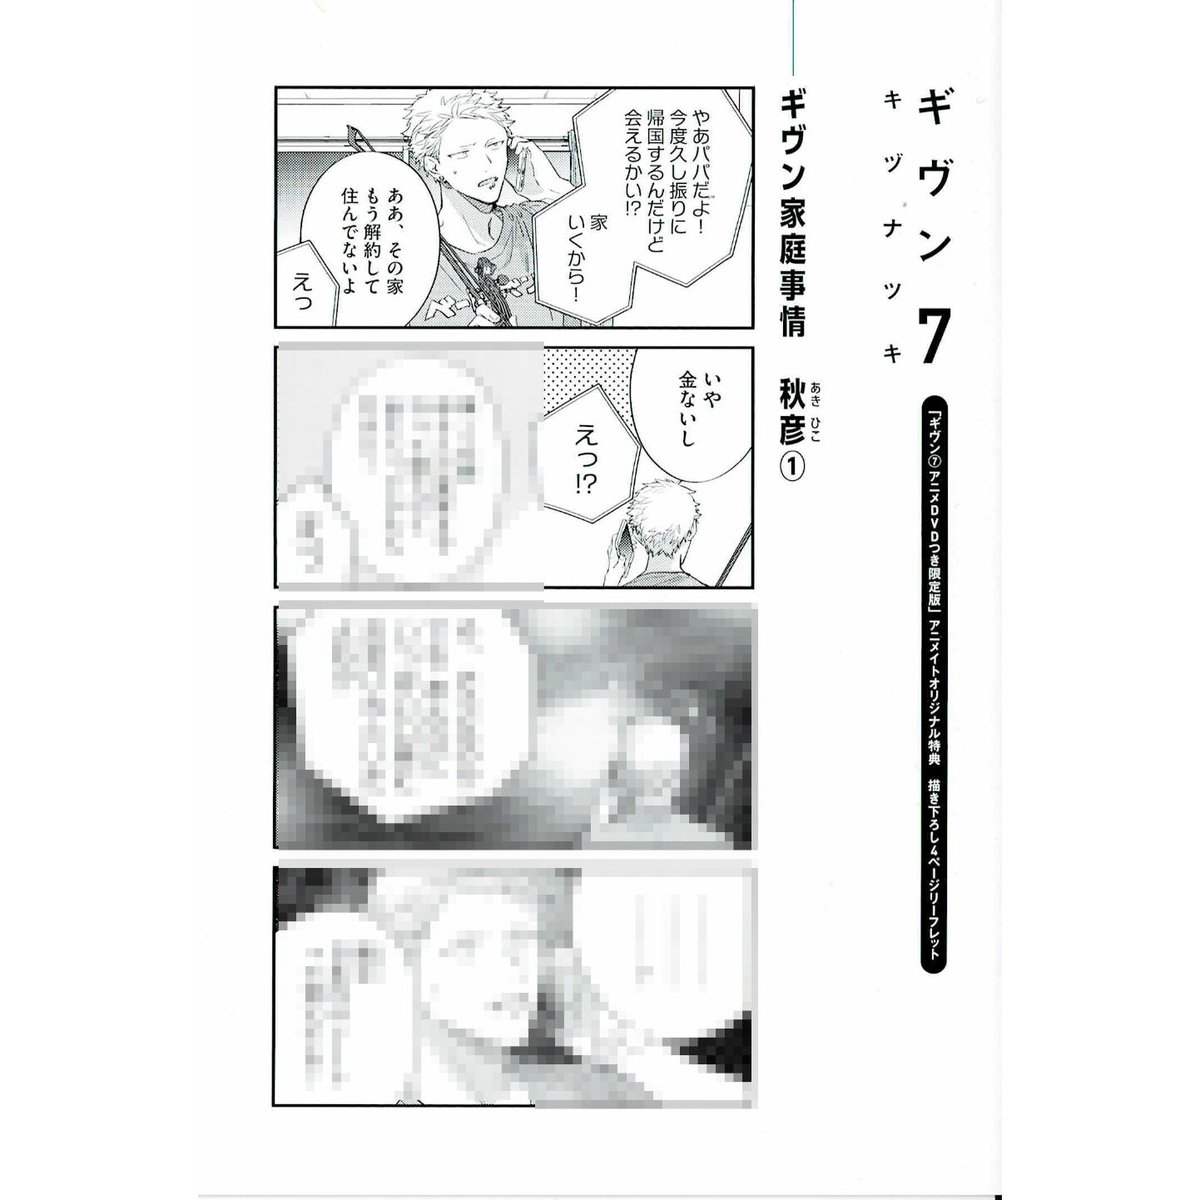 キヅナツキ 『ギヴン』7巻 アニメイト特典 リーフレット【BLグッズ】 | K-BOOKS ...